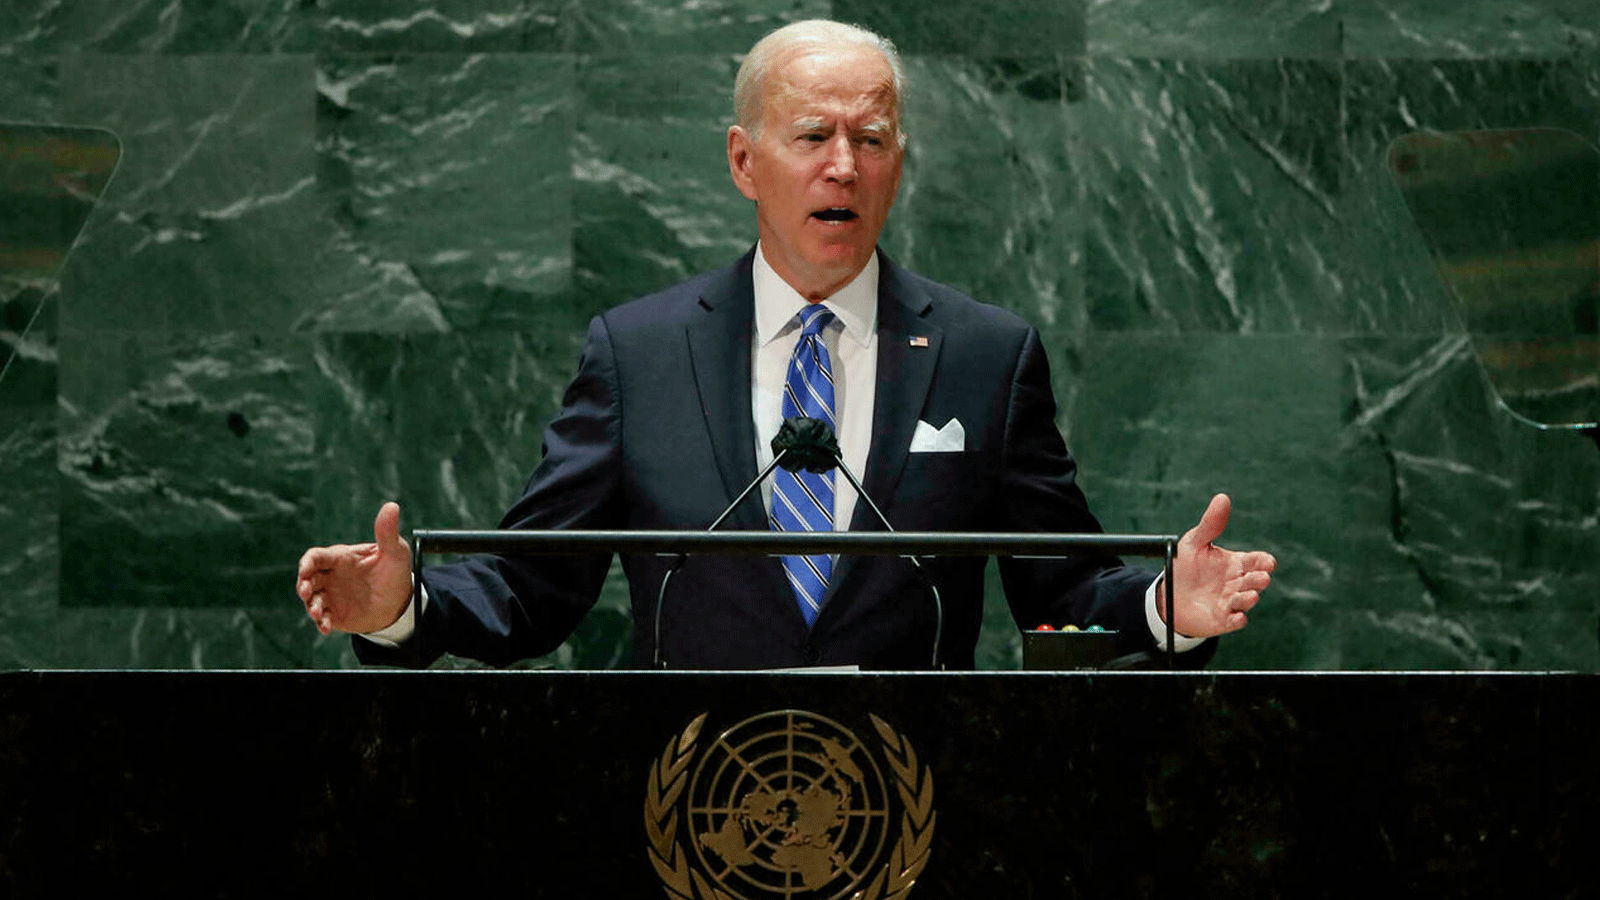 الرئيس الأميركي جو بايدن يخاطب الجمعية العامة للأمم المتحدة في نيويورك في 21 أيلول/سبتمبر 2021